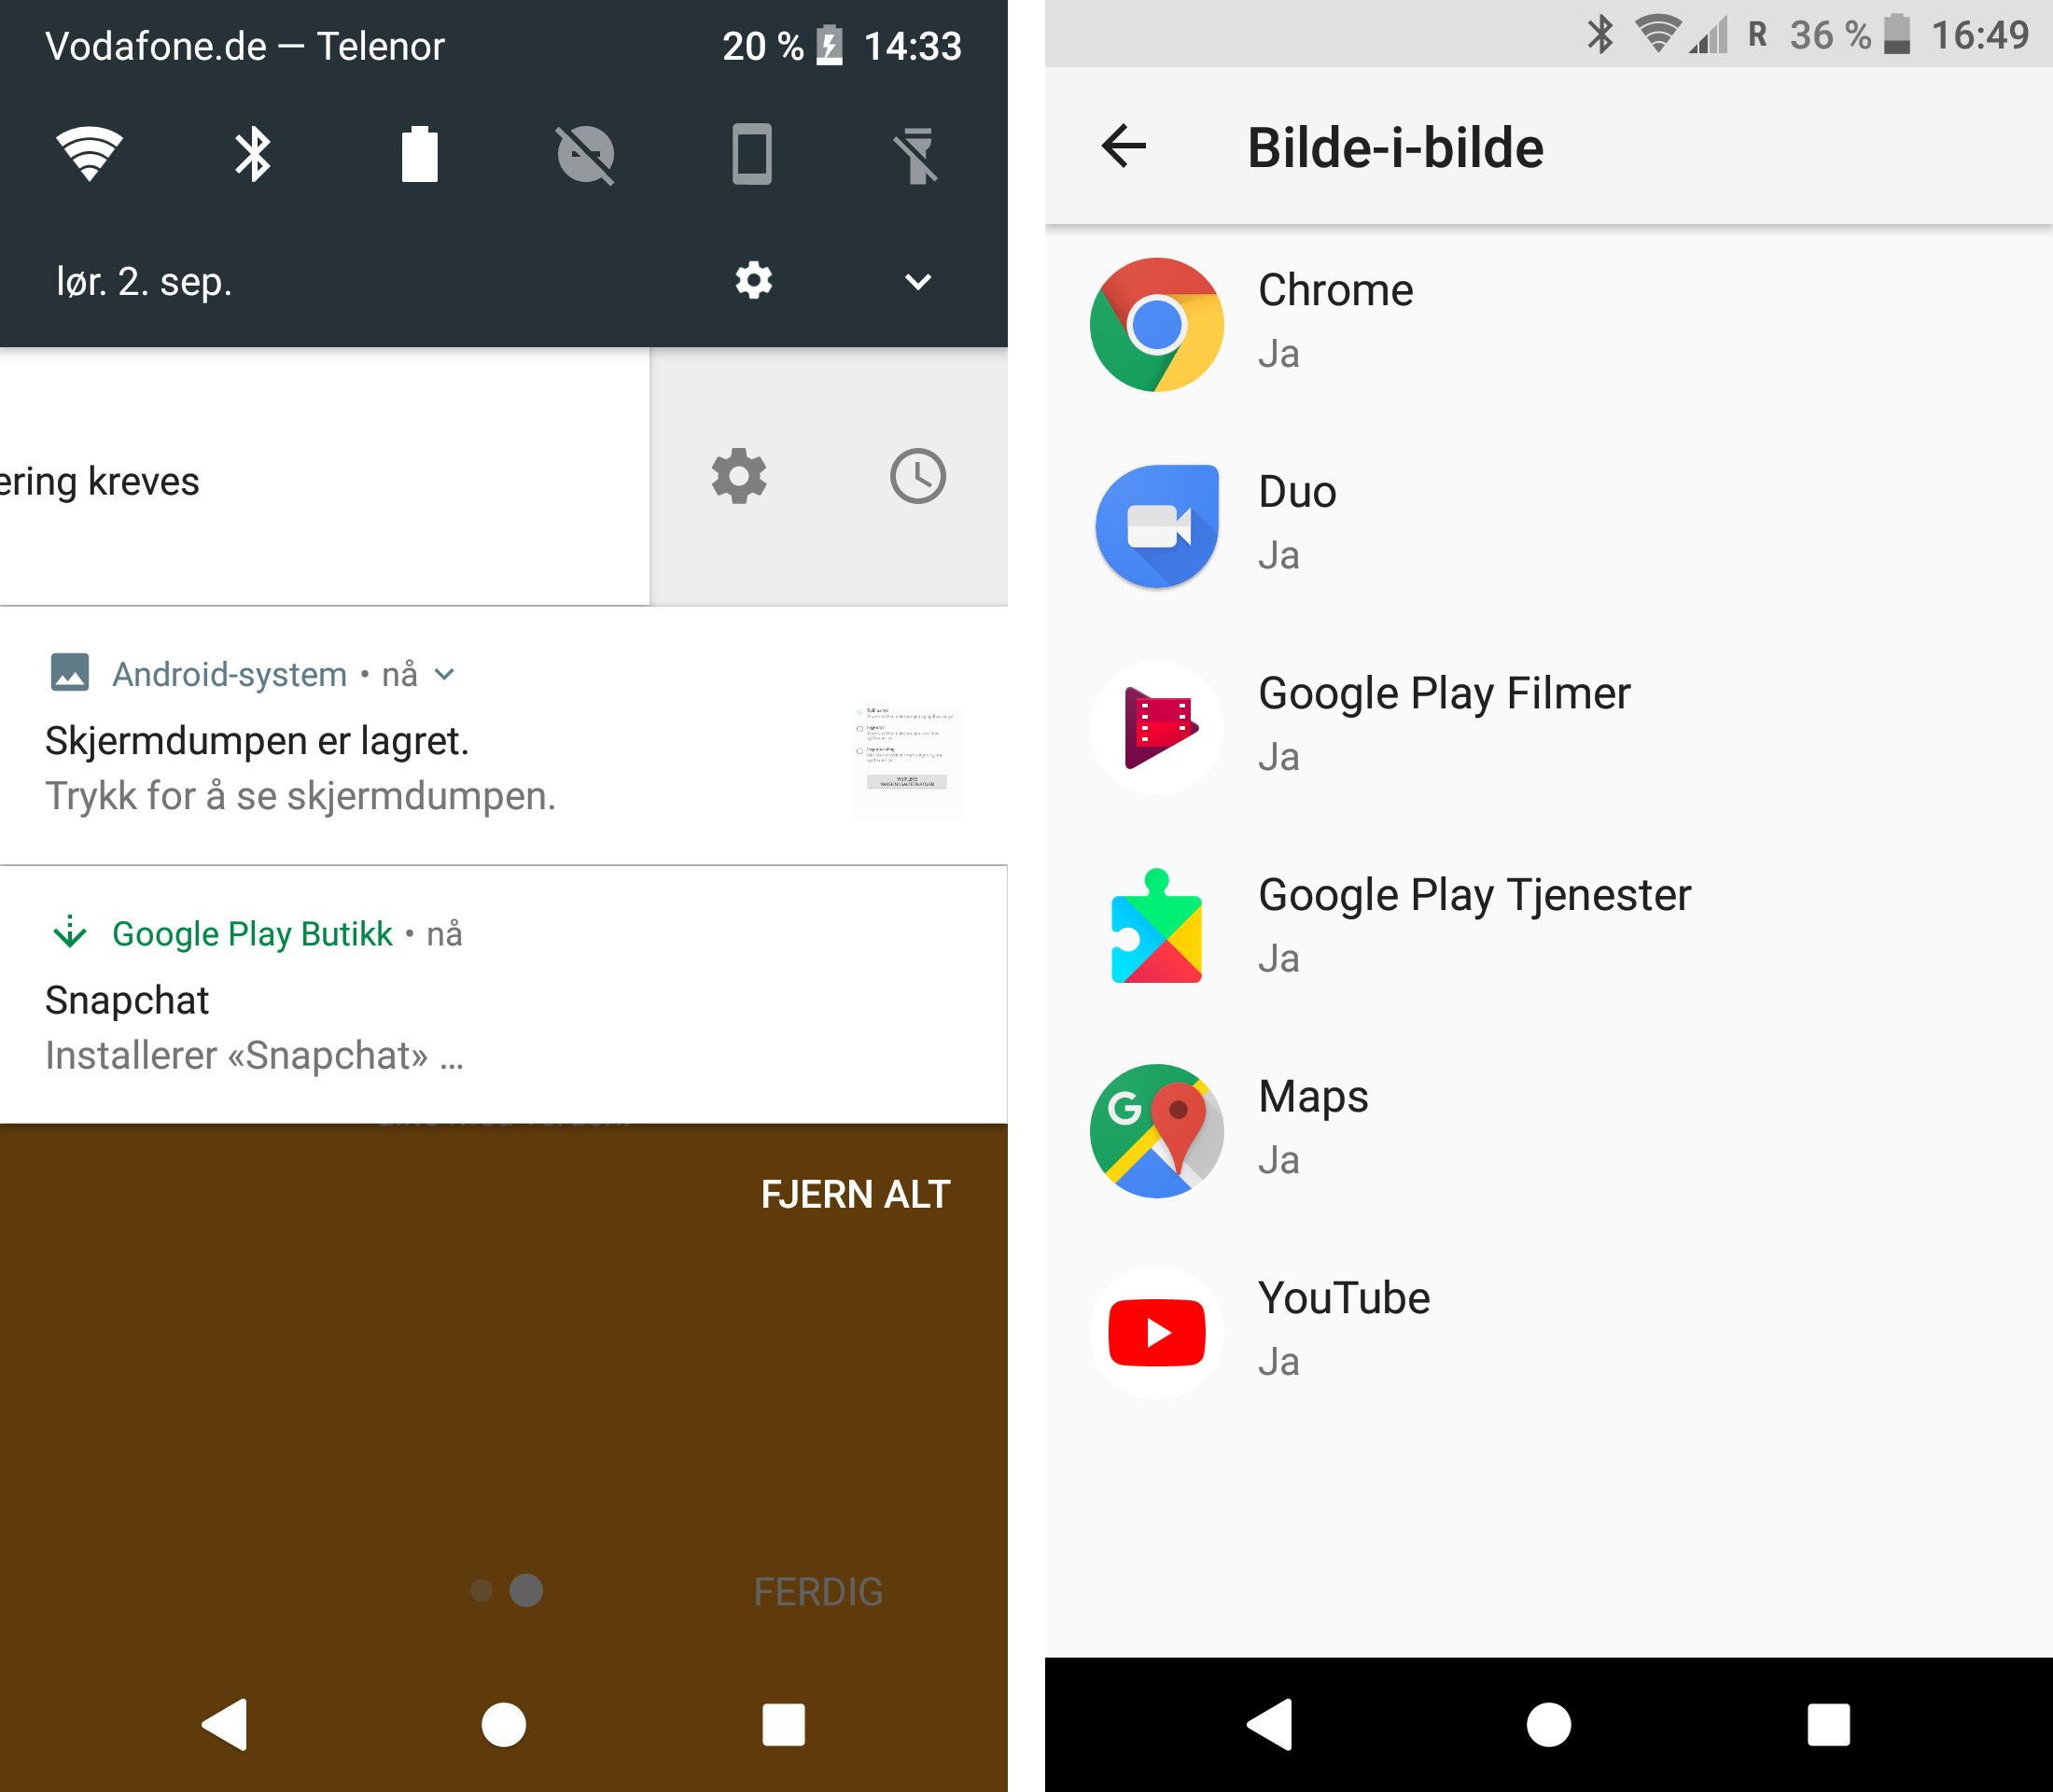 Android 8 gjør at du blant annet kan slumre varslinger du får, og du kan også få ha apper aktive på skjermen etter at du har gått ut av dem, som bilde-i-bilde. Foreløpig fungerer det ikke for Youtube, selv om det ligger i listen. Navigasjon via Google Maps virker imidlertid upåklagelig.